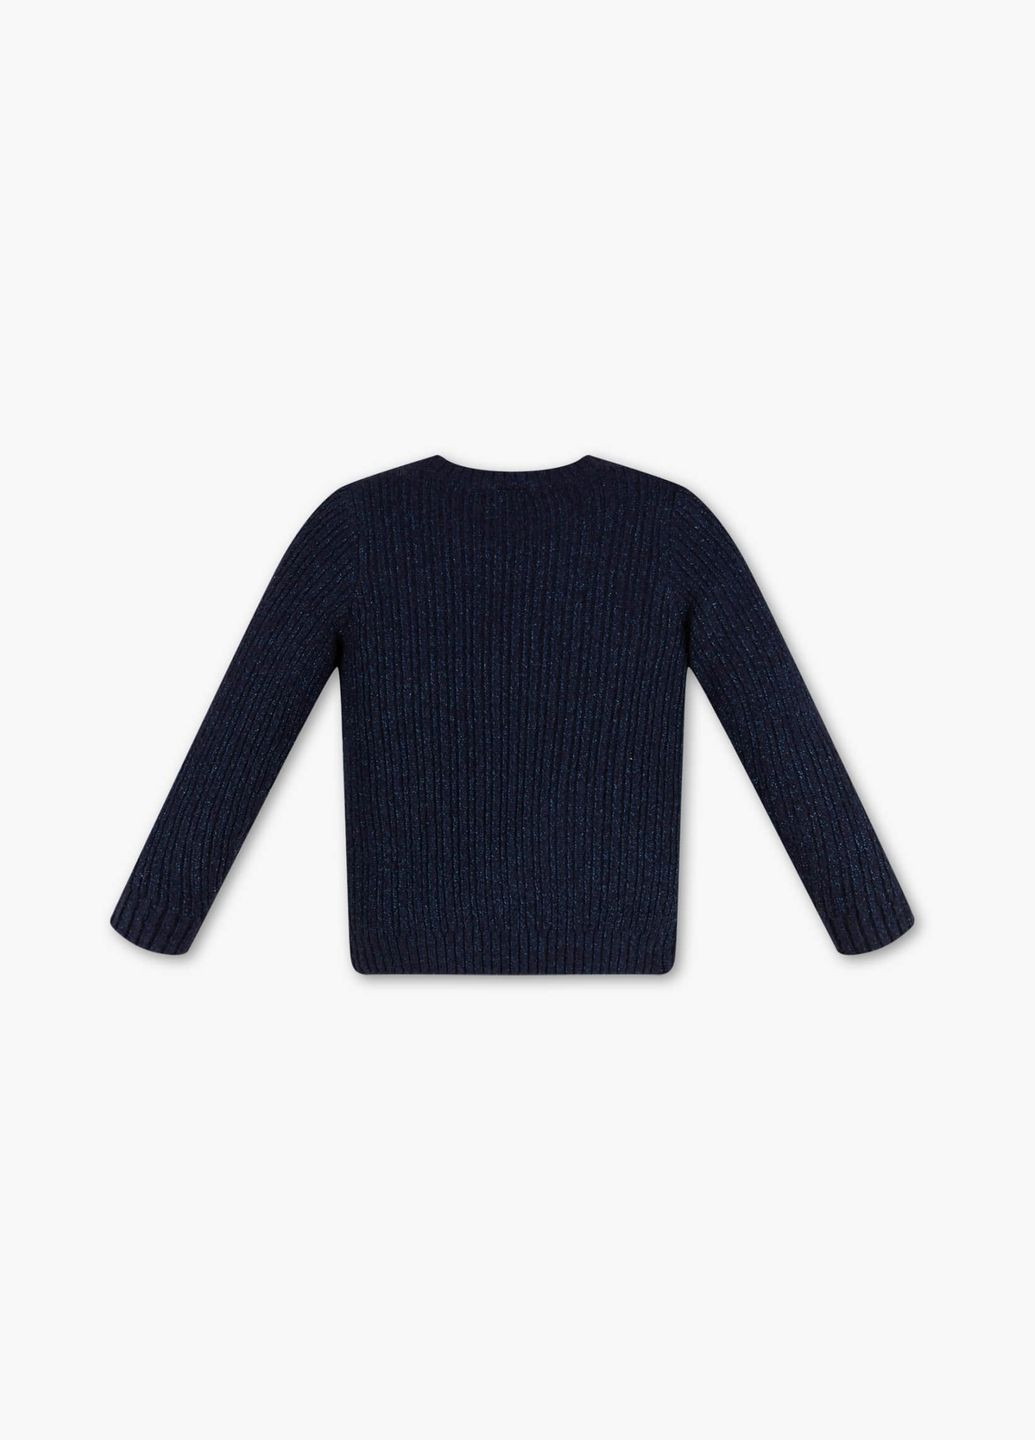 Синий демисезонный свитер для девочки 128 размер синий 2026489 C&A